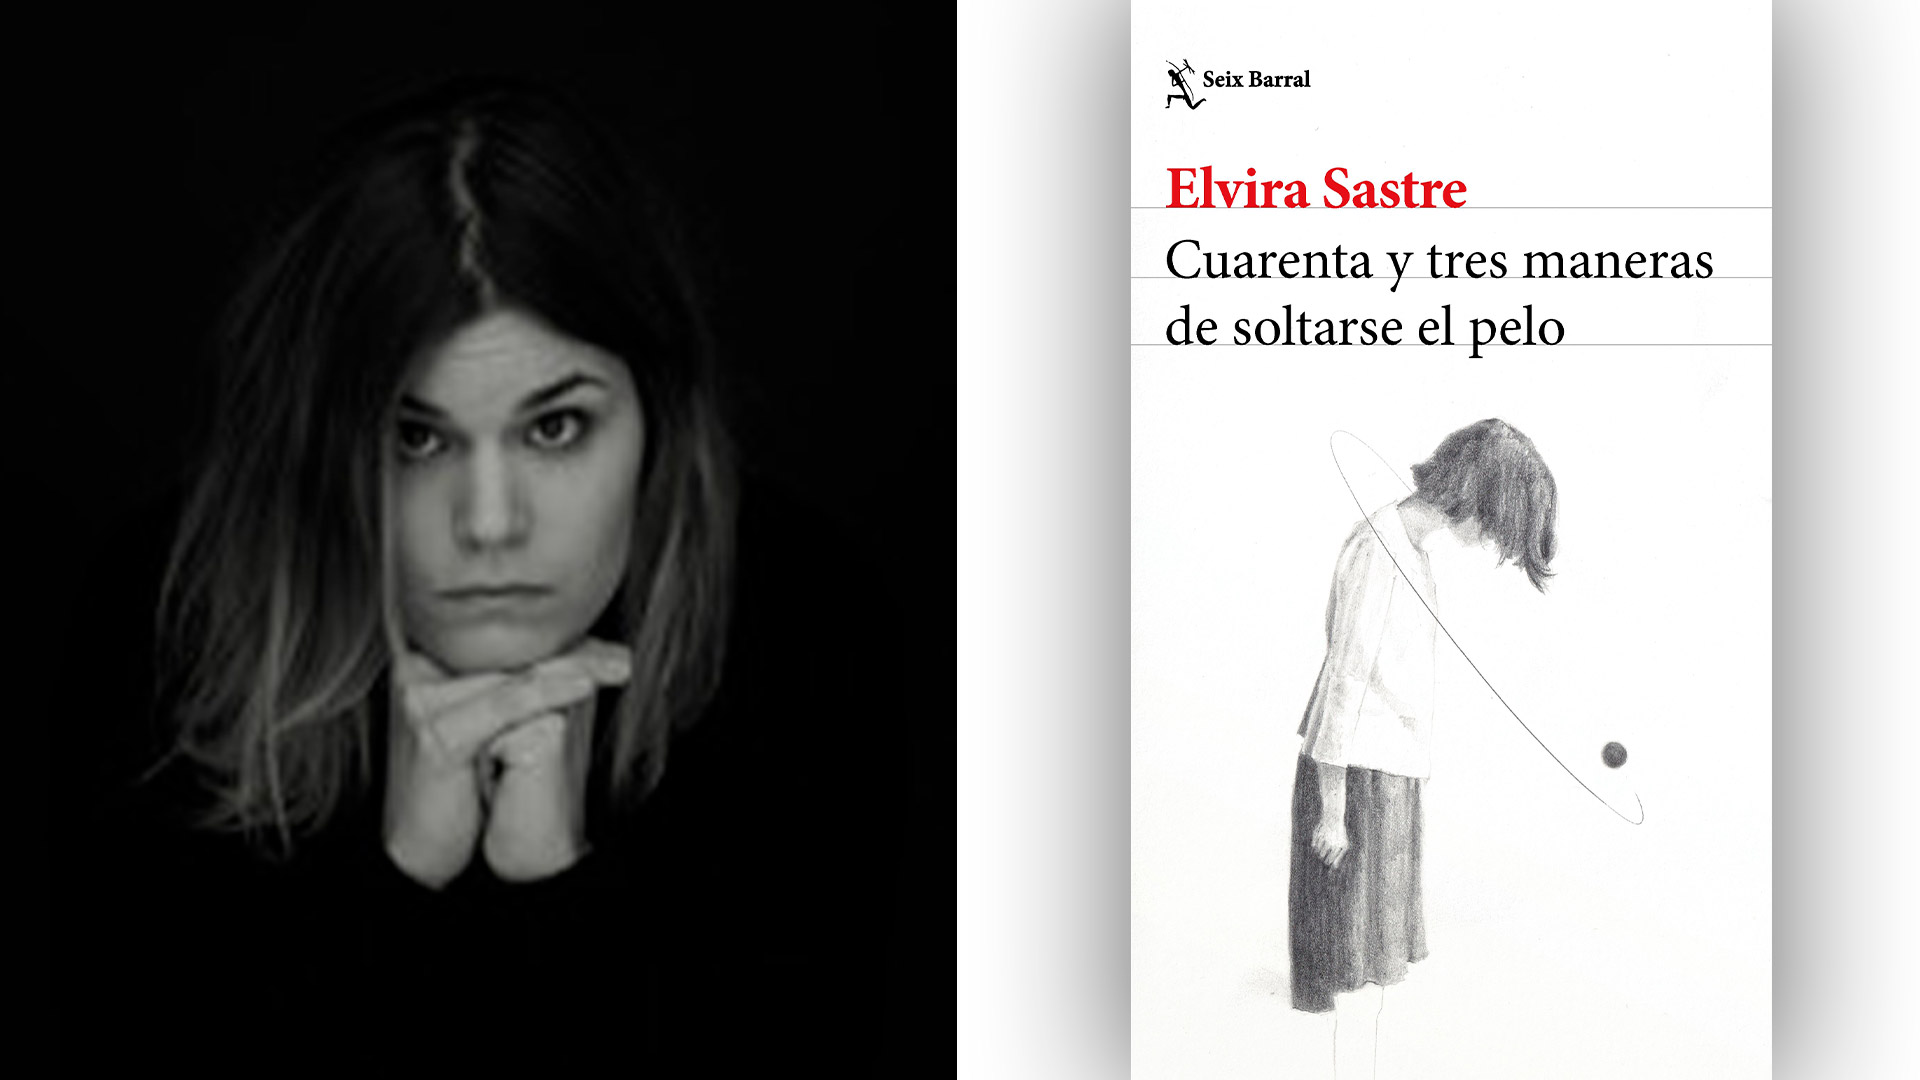 Elvira Sastre, poeta y periodista segoviana